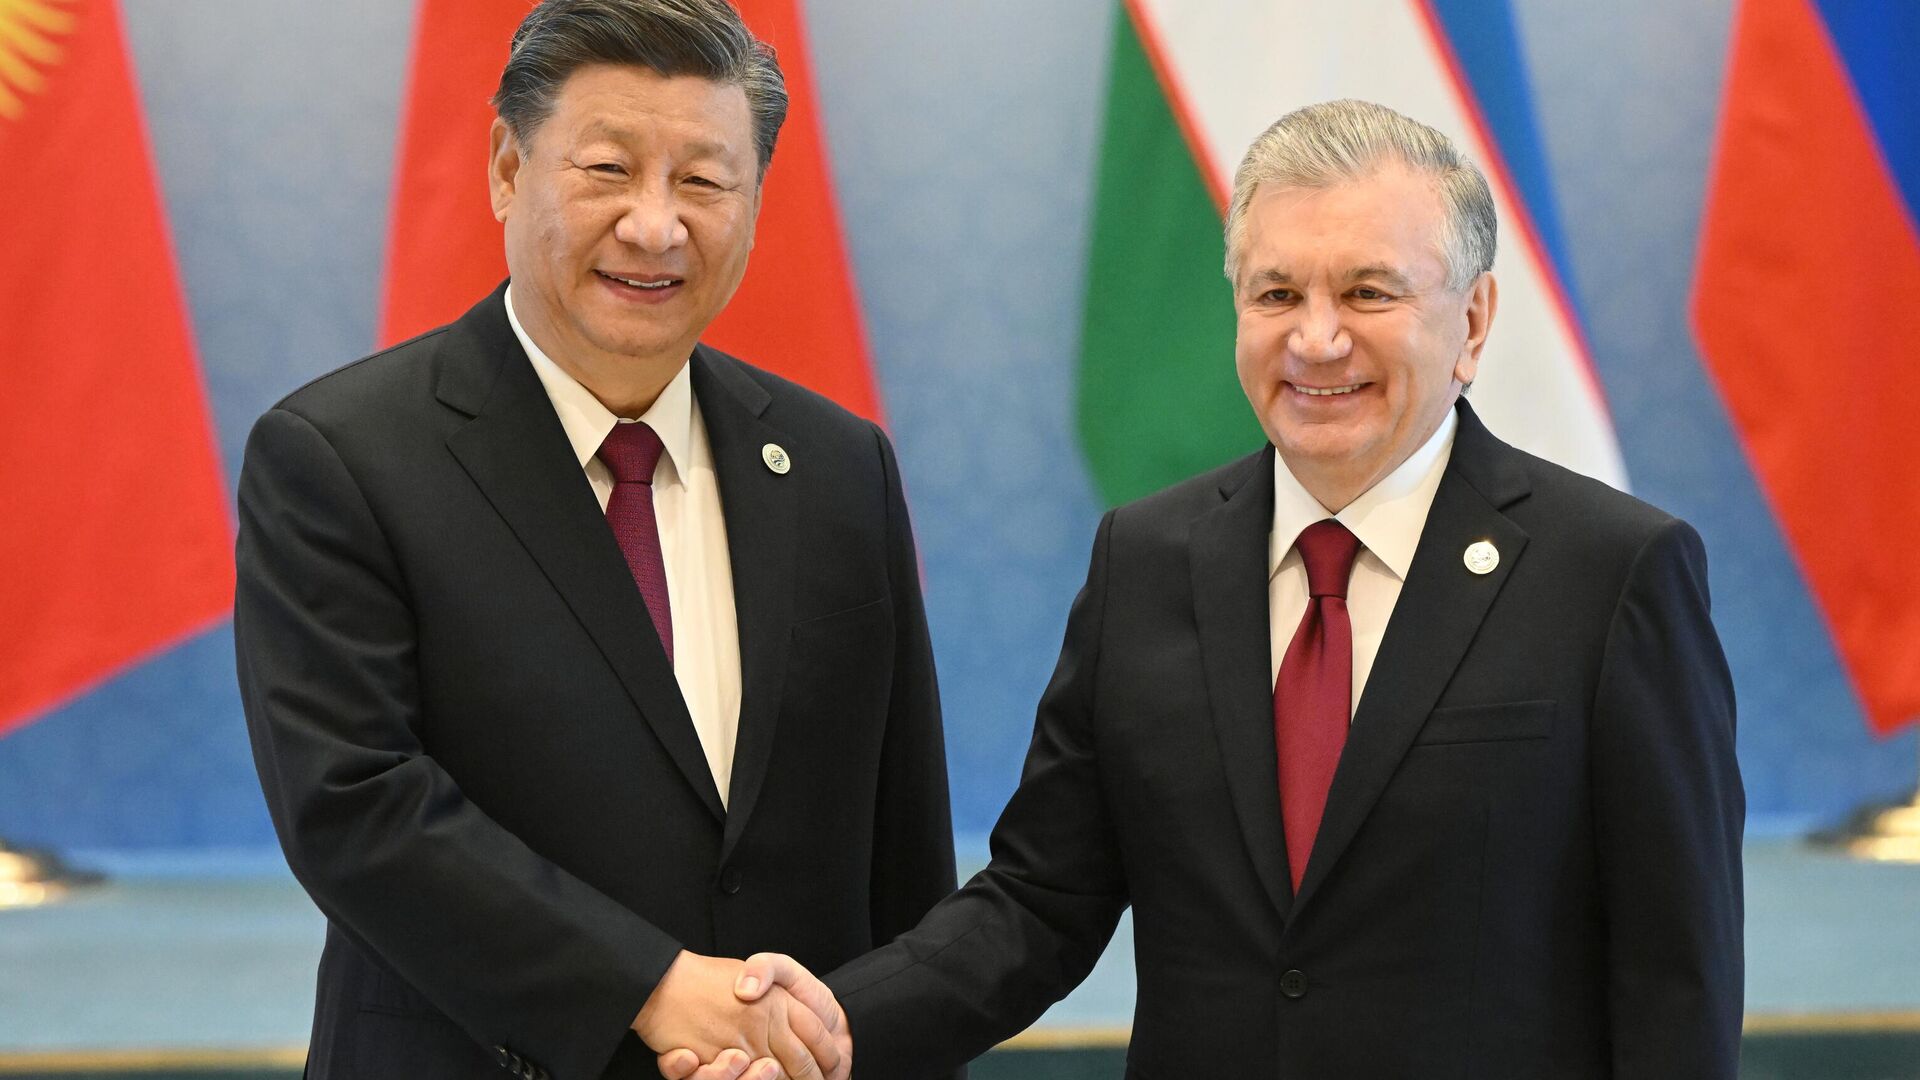 Шавкат Мирзиёев поздравил Си Цзиньпина с переизбранием